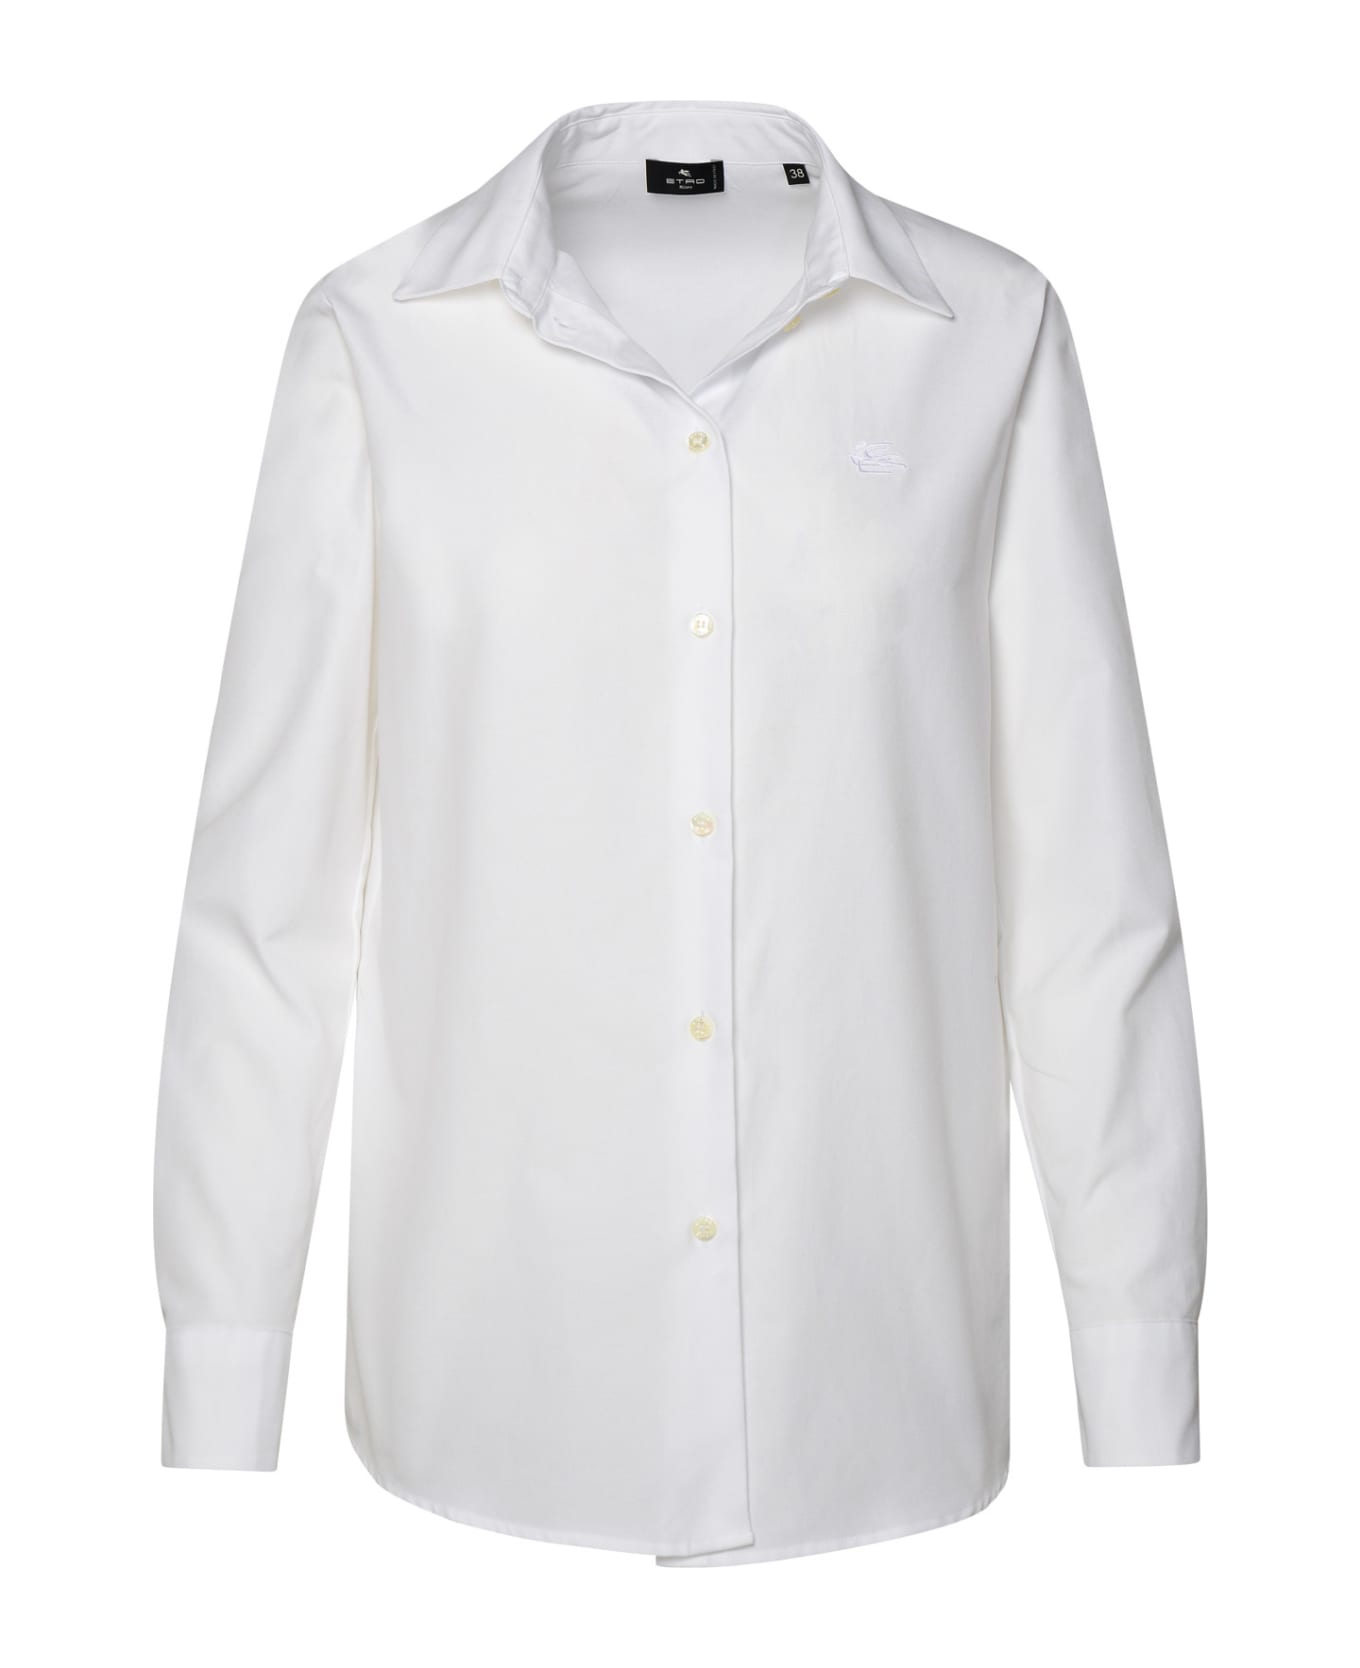 Etro White Cotton Shirt シャツ